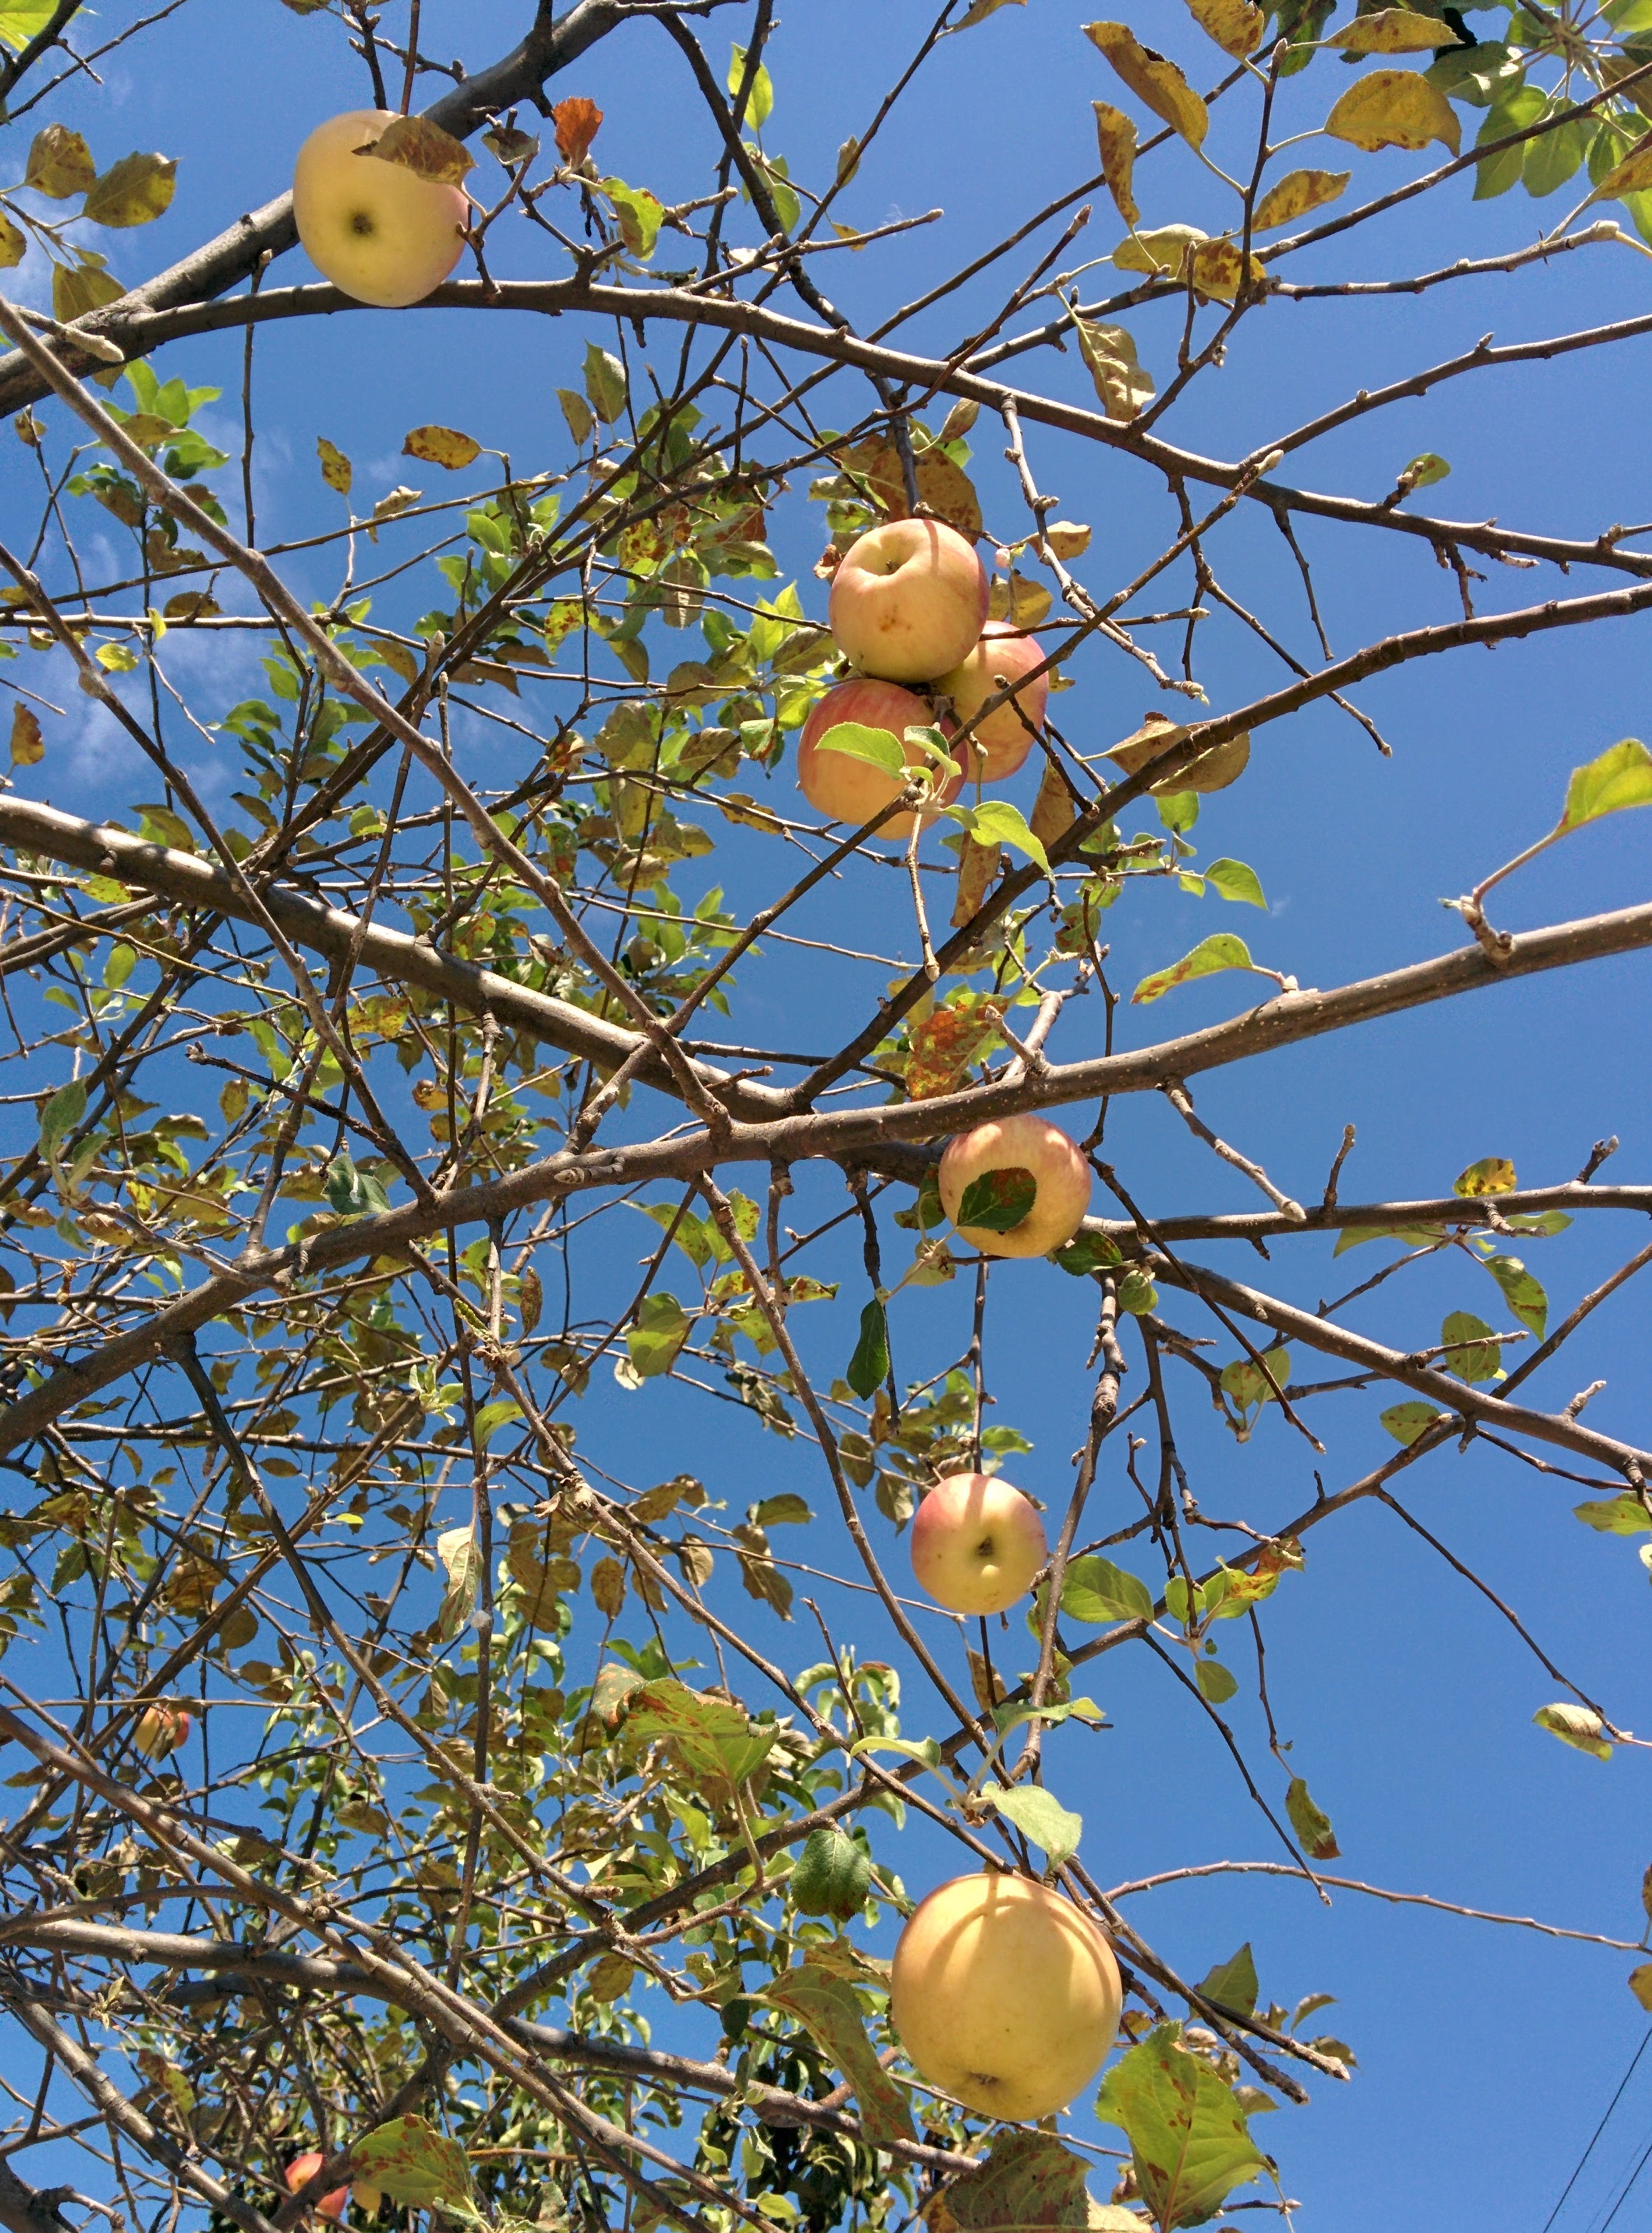 IMG_20150929_114706.jpg 가정집 정원수로 자라는 키큰 사과나무의 사과 열매